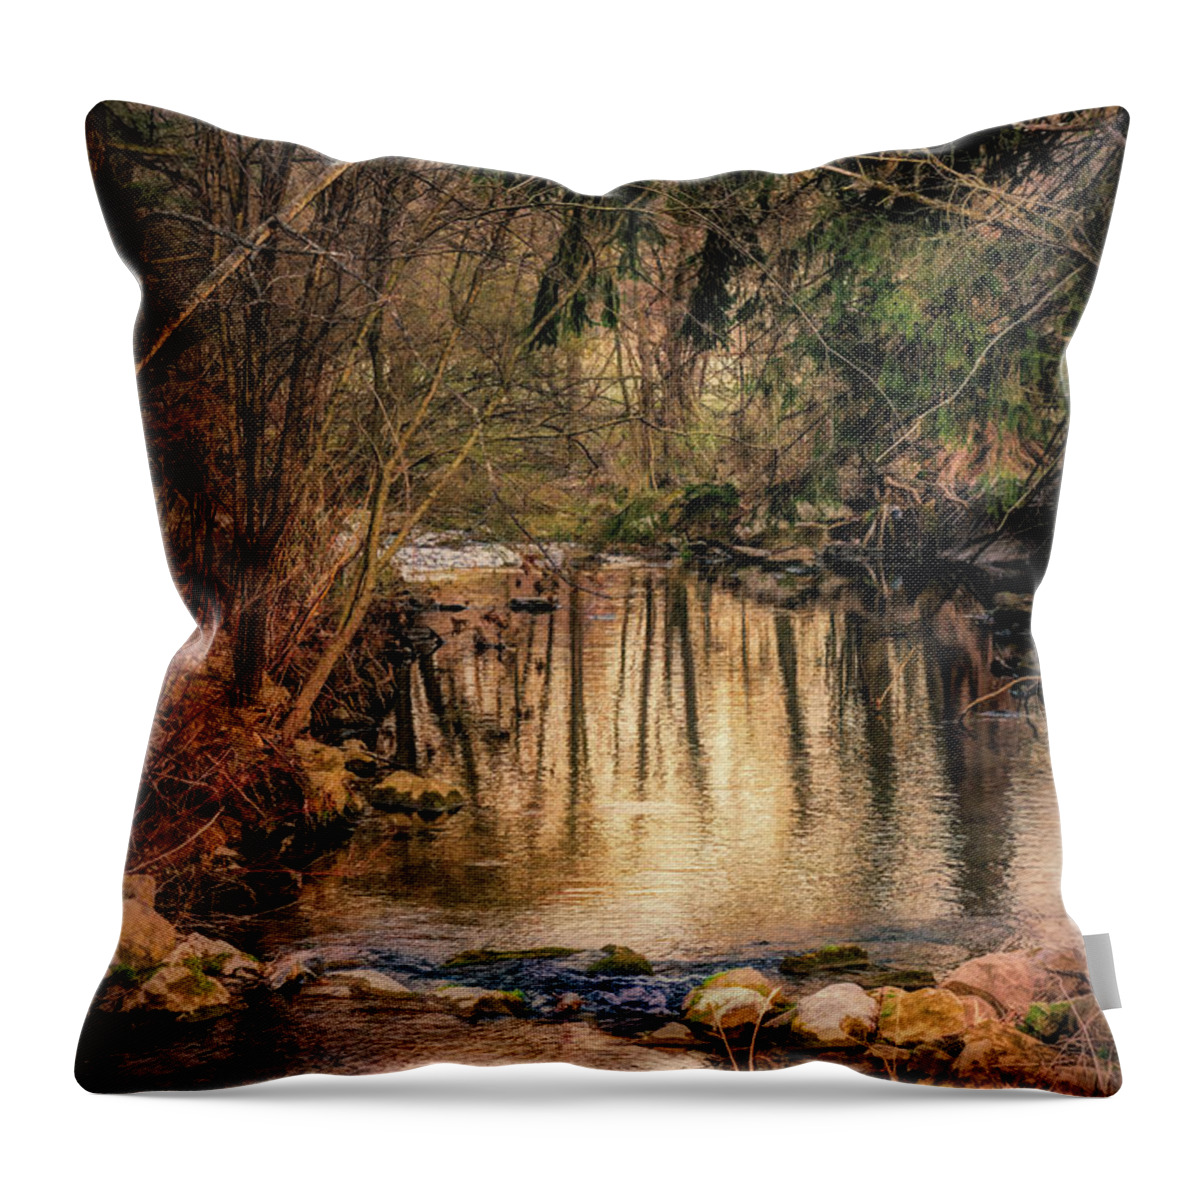 Little Cedar Creek Throw Pillow featuring the mixed media Little Cedar Creek Oil by Jason Fink